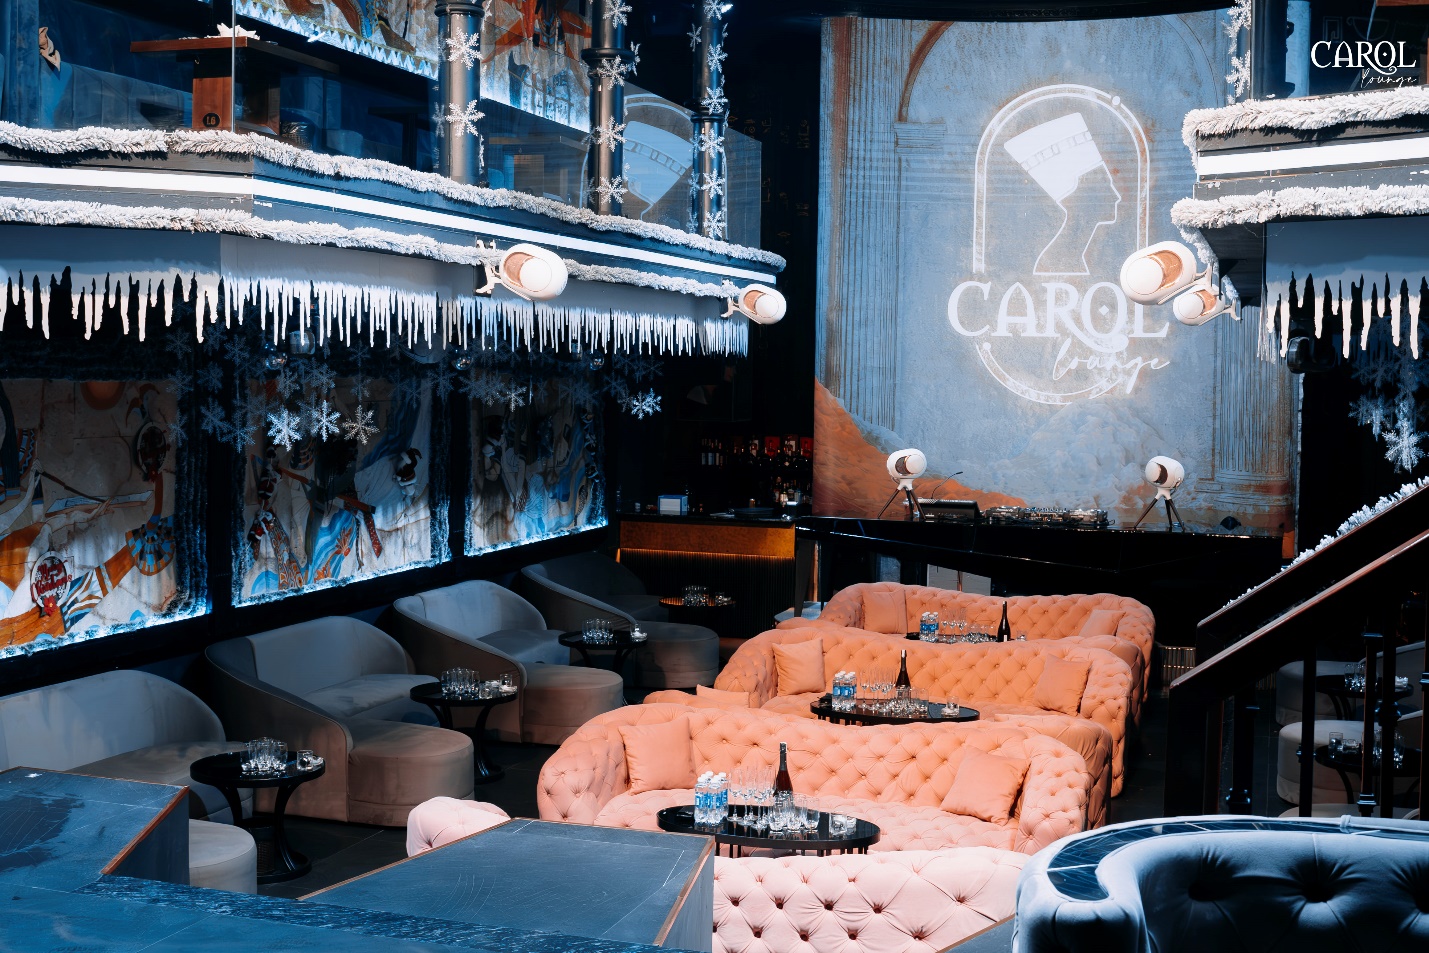 Sự lột xác ấn tượng của Carol Lounge - Tụ điểm giải trí phong cách Ai Cập tại Đà Nẵng - Ảnh 2.